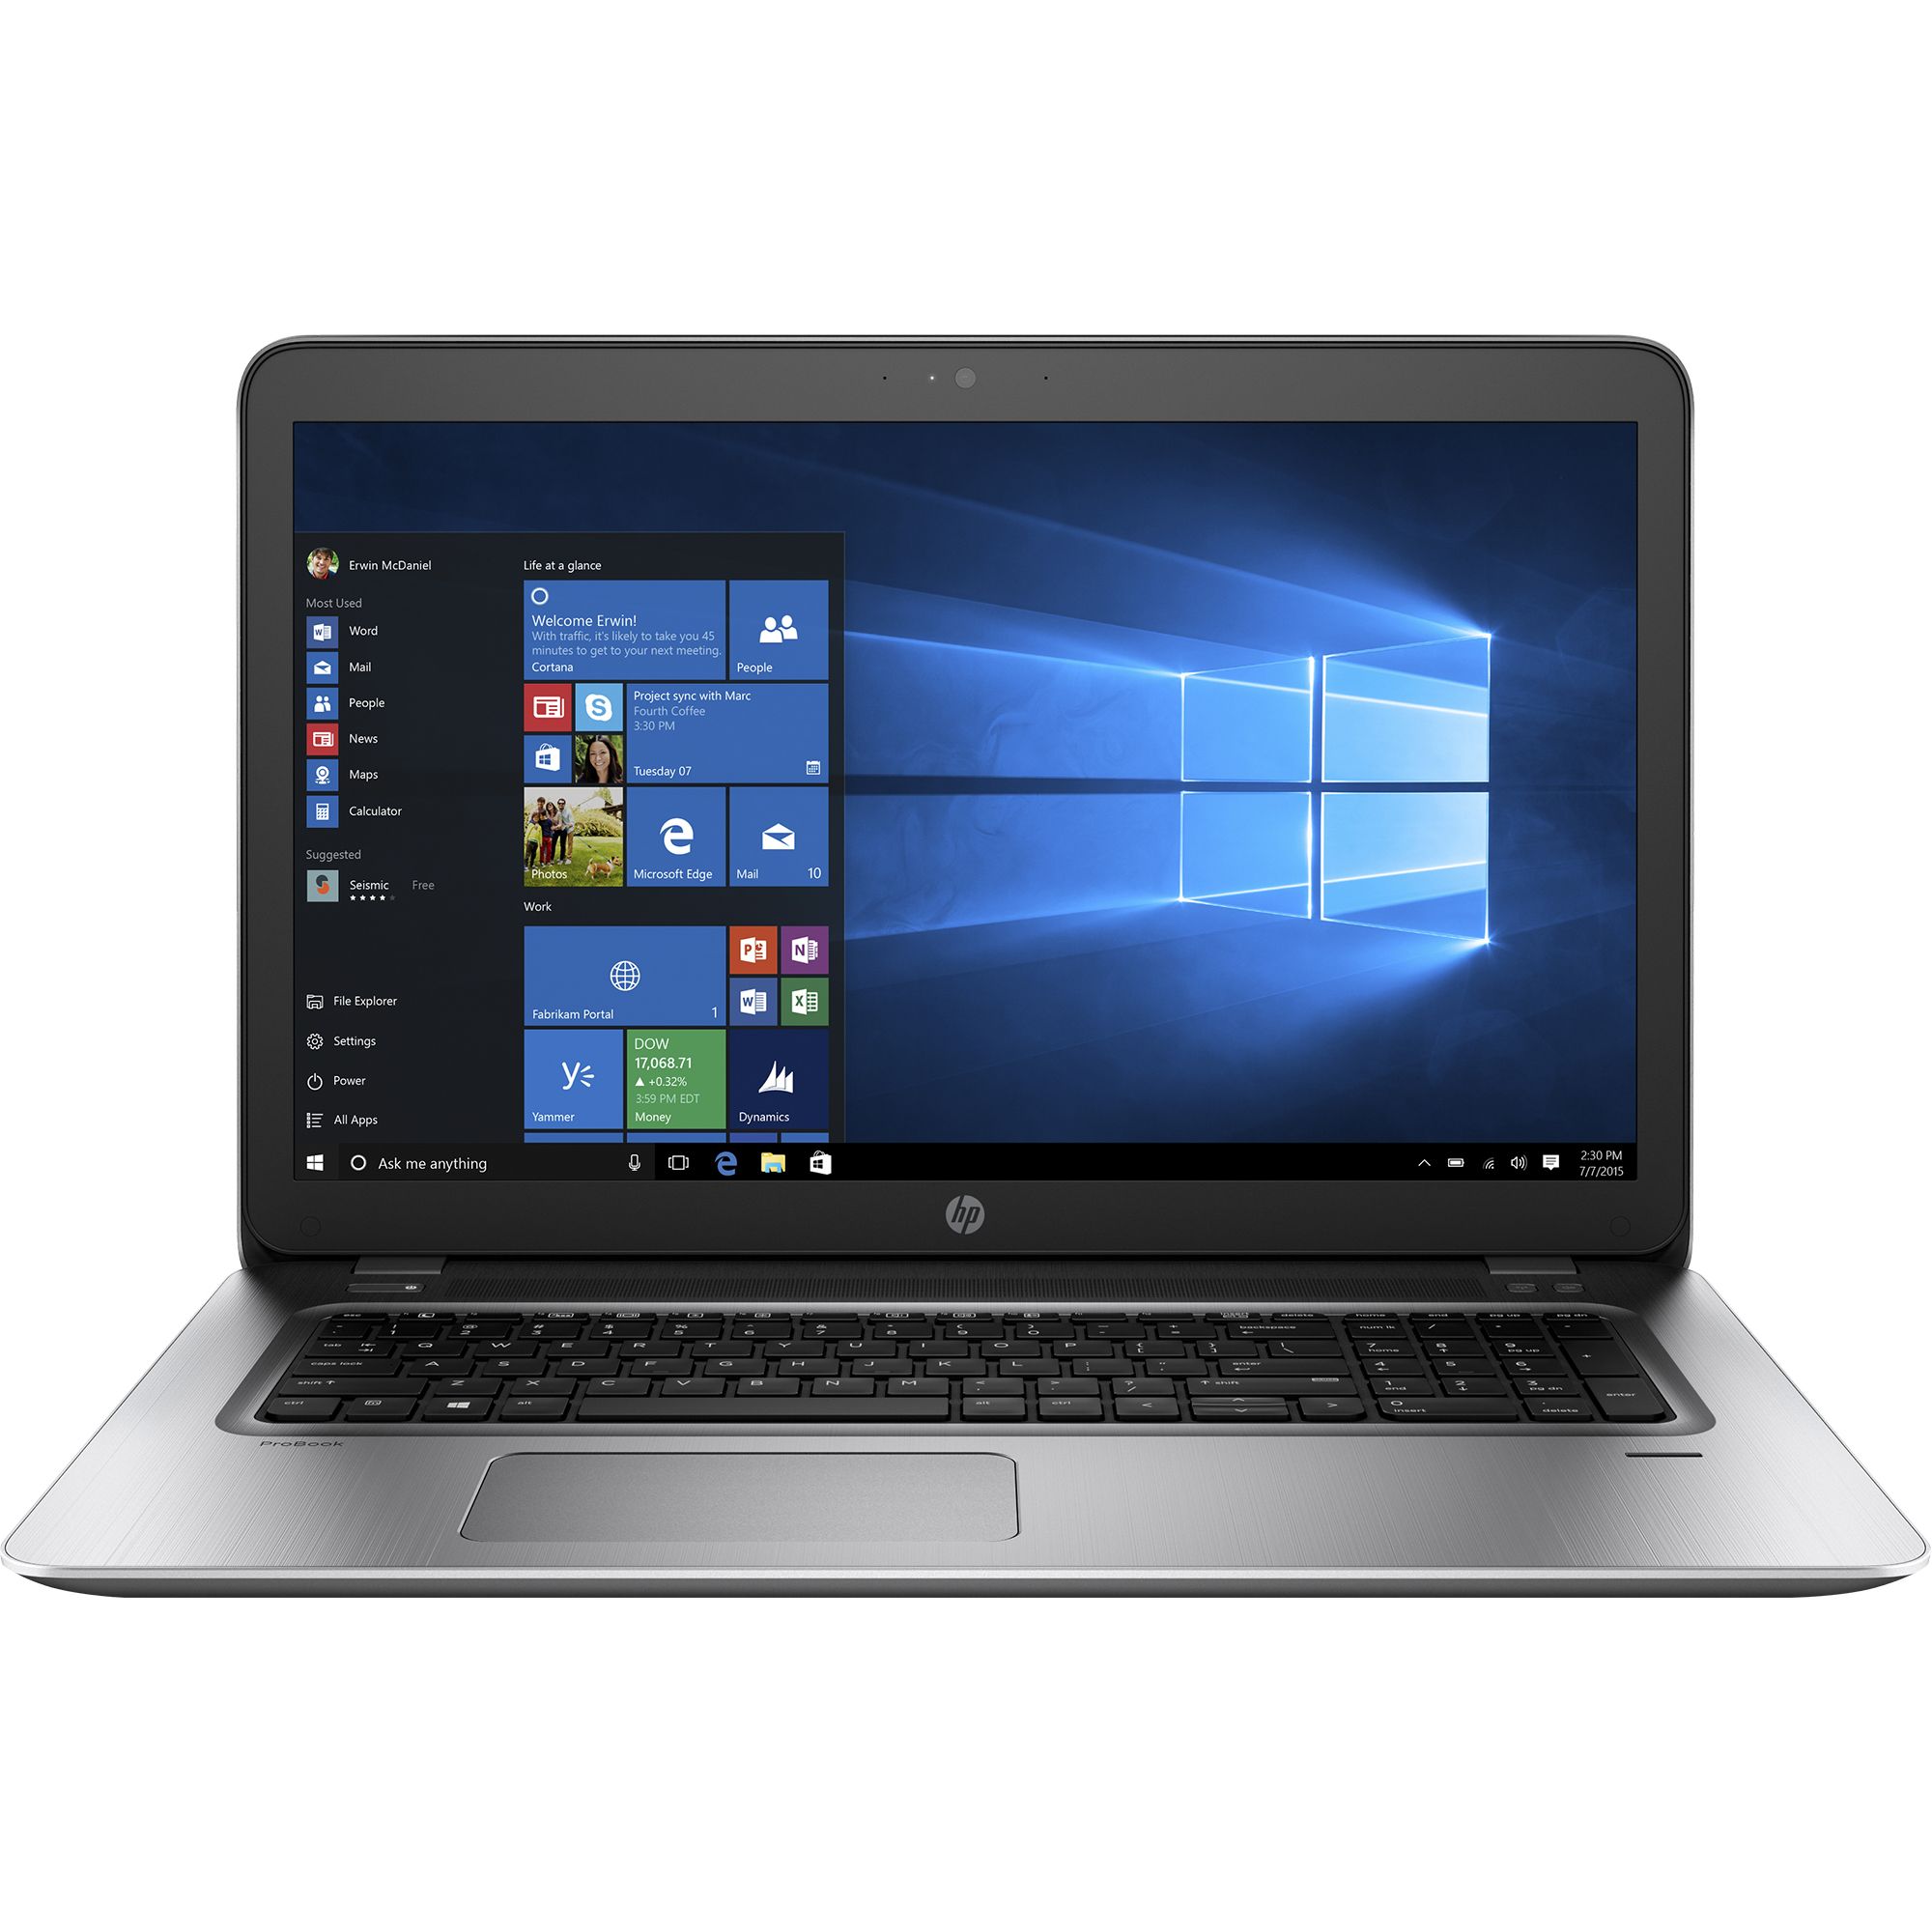 Laptop HP ProBook 470 G4, Intel i7-7500U, 8GB DDR4, HDD 1TB, nVidia GeForce 930MX 2GB, Windows 10 Pro